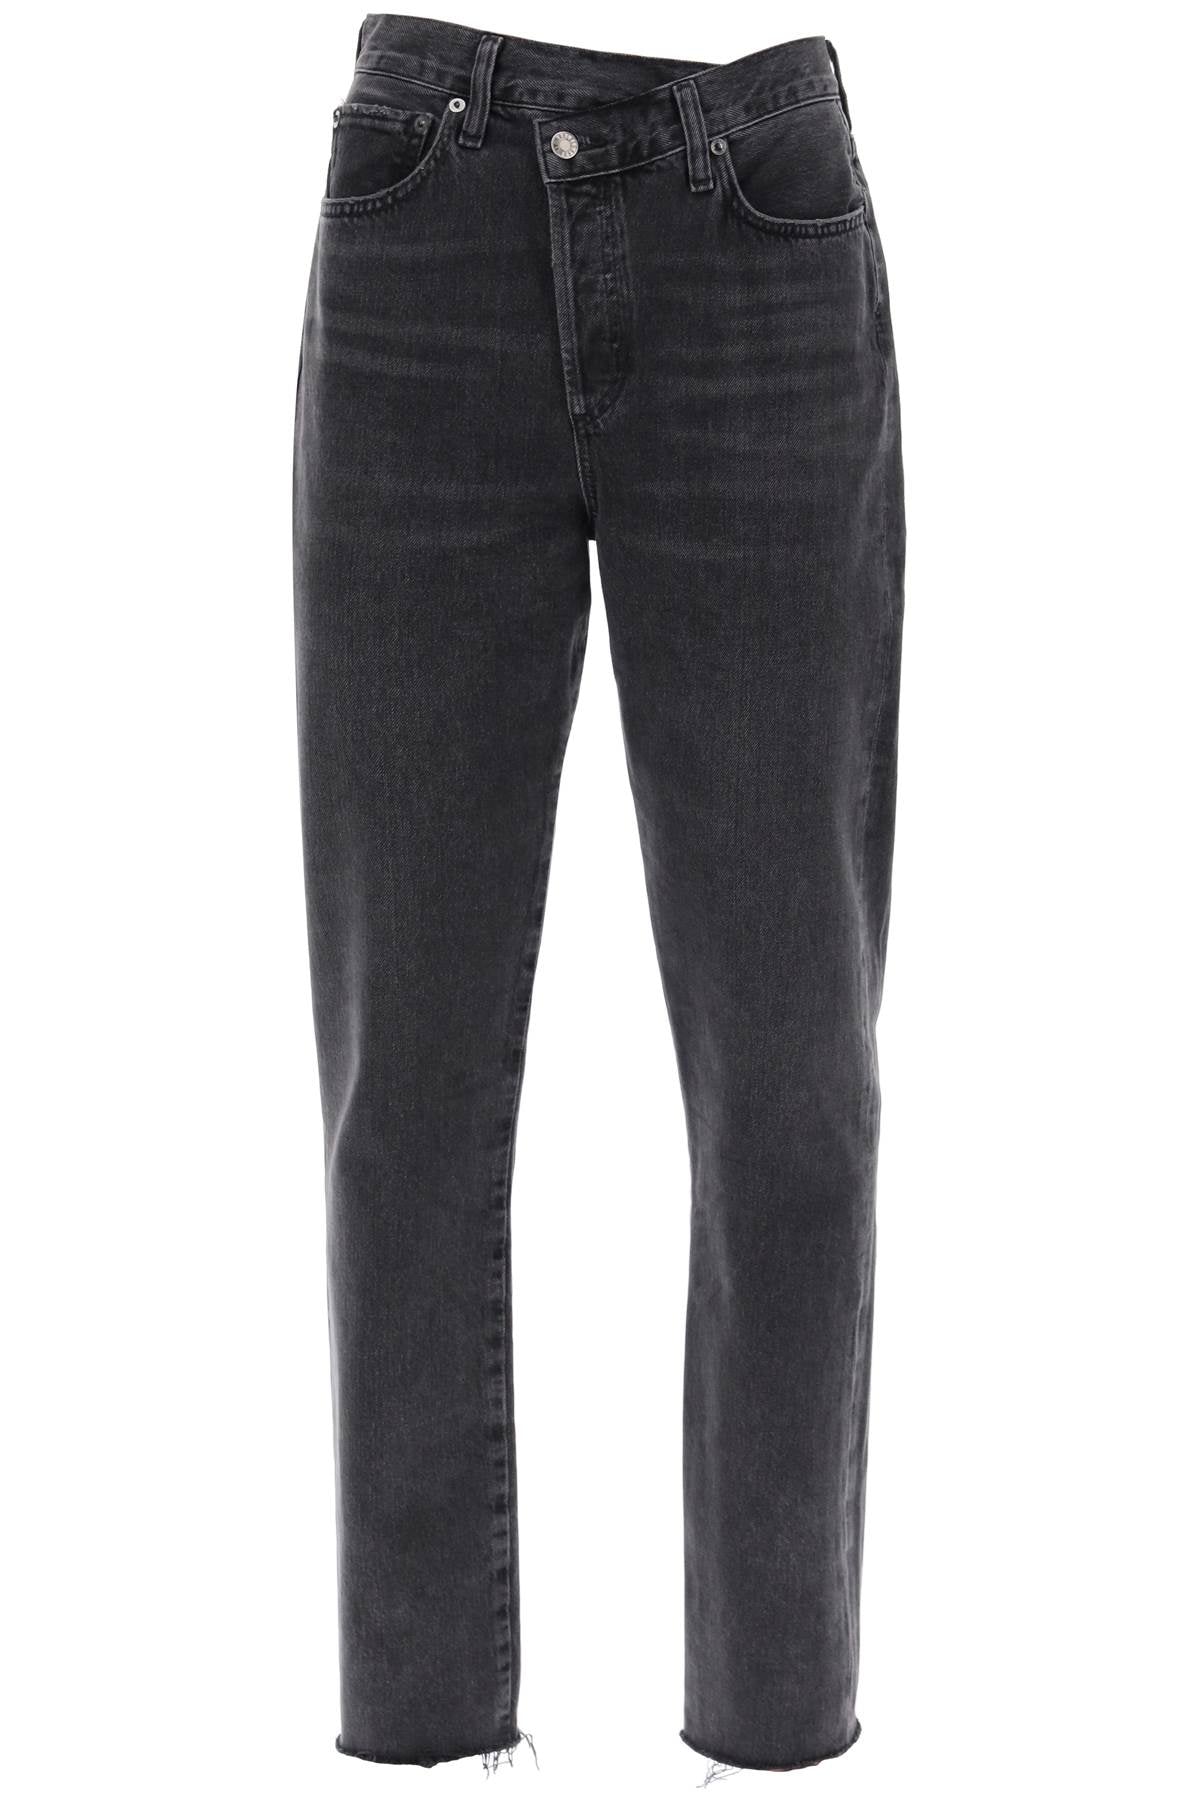 Agolde offset waistband jeans-0